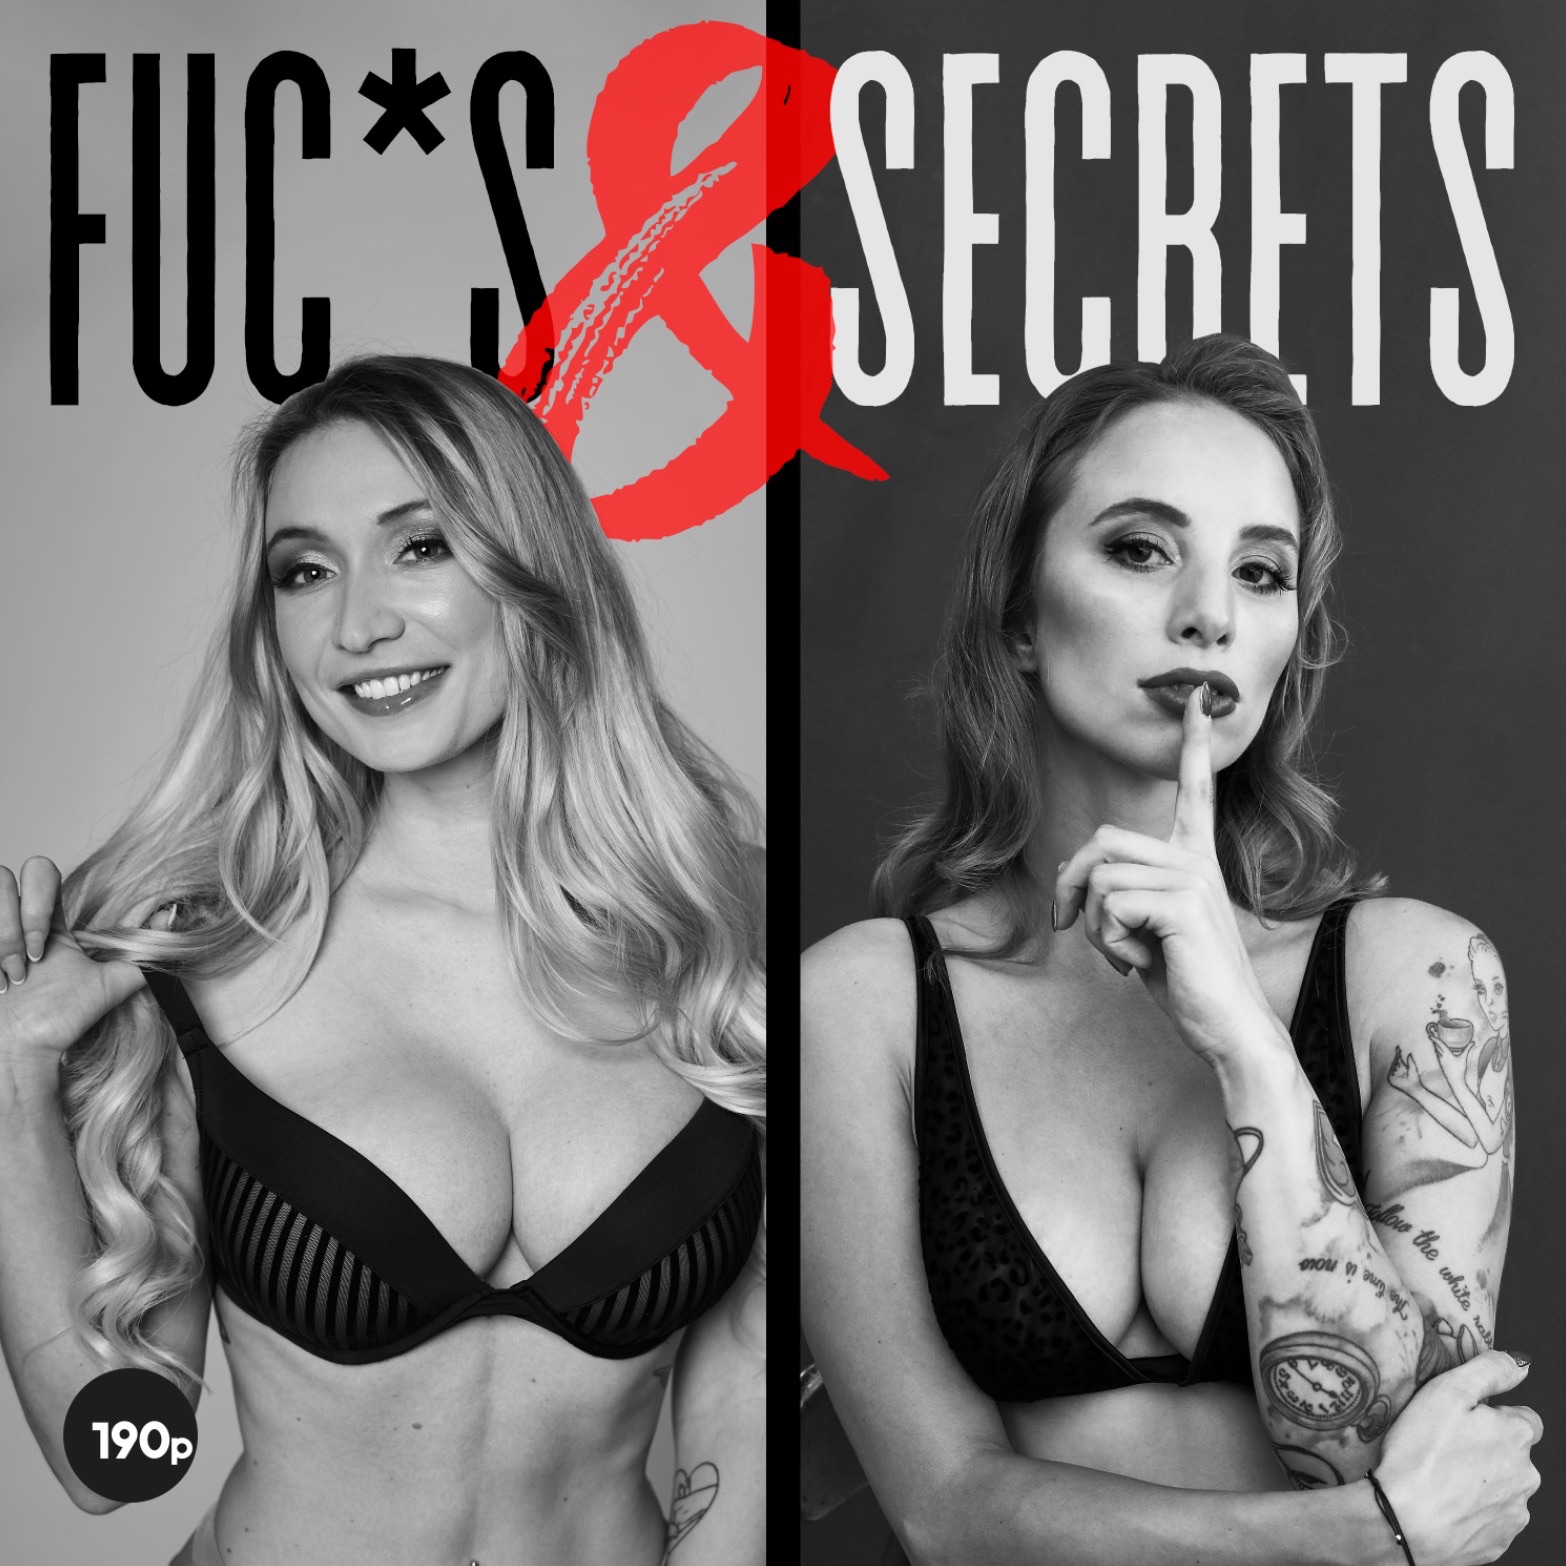 Ich bin Hanna Interview mit einer Autorin Fuc*s & Secrets mit